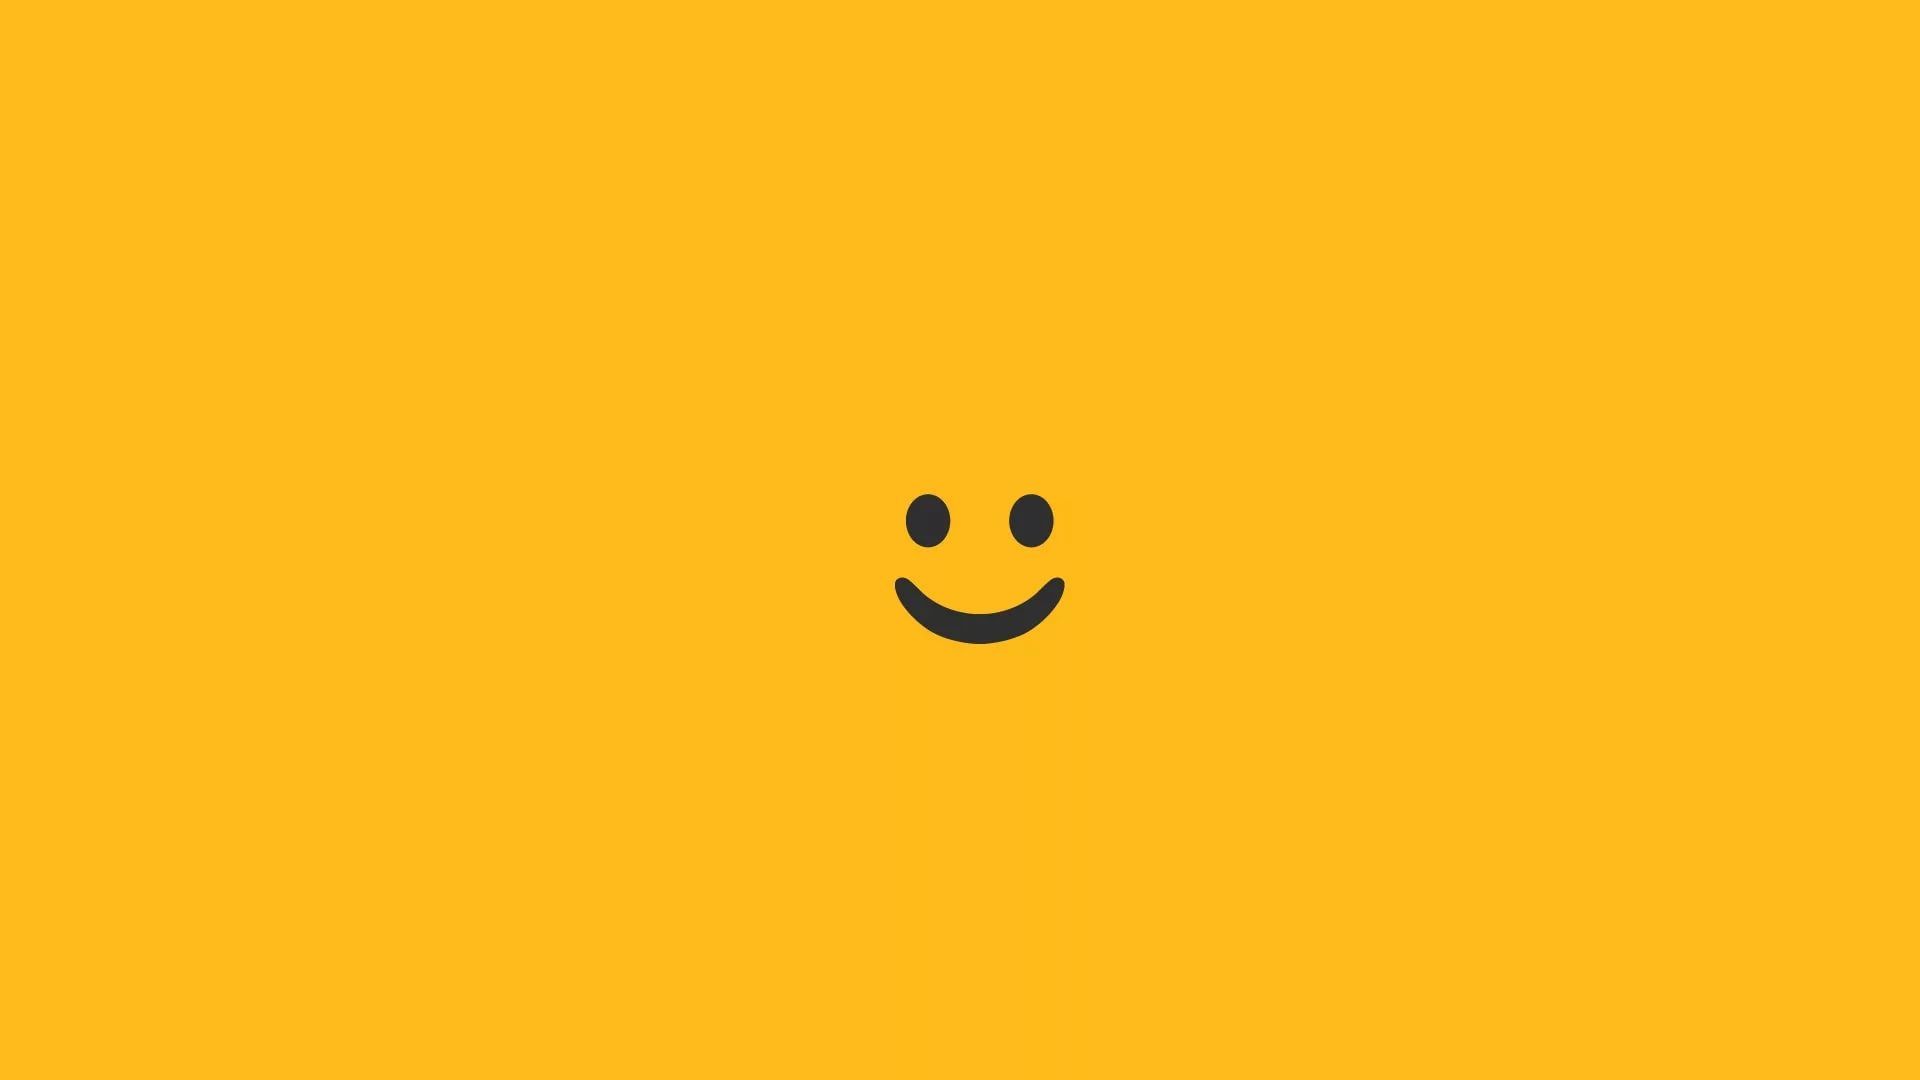  Smile  Emoji  Wallpapers  Wallpaper  Cave